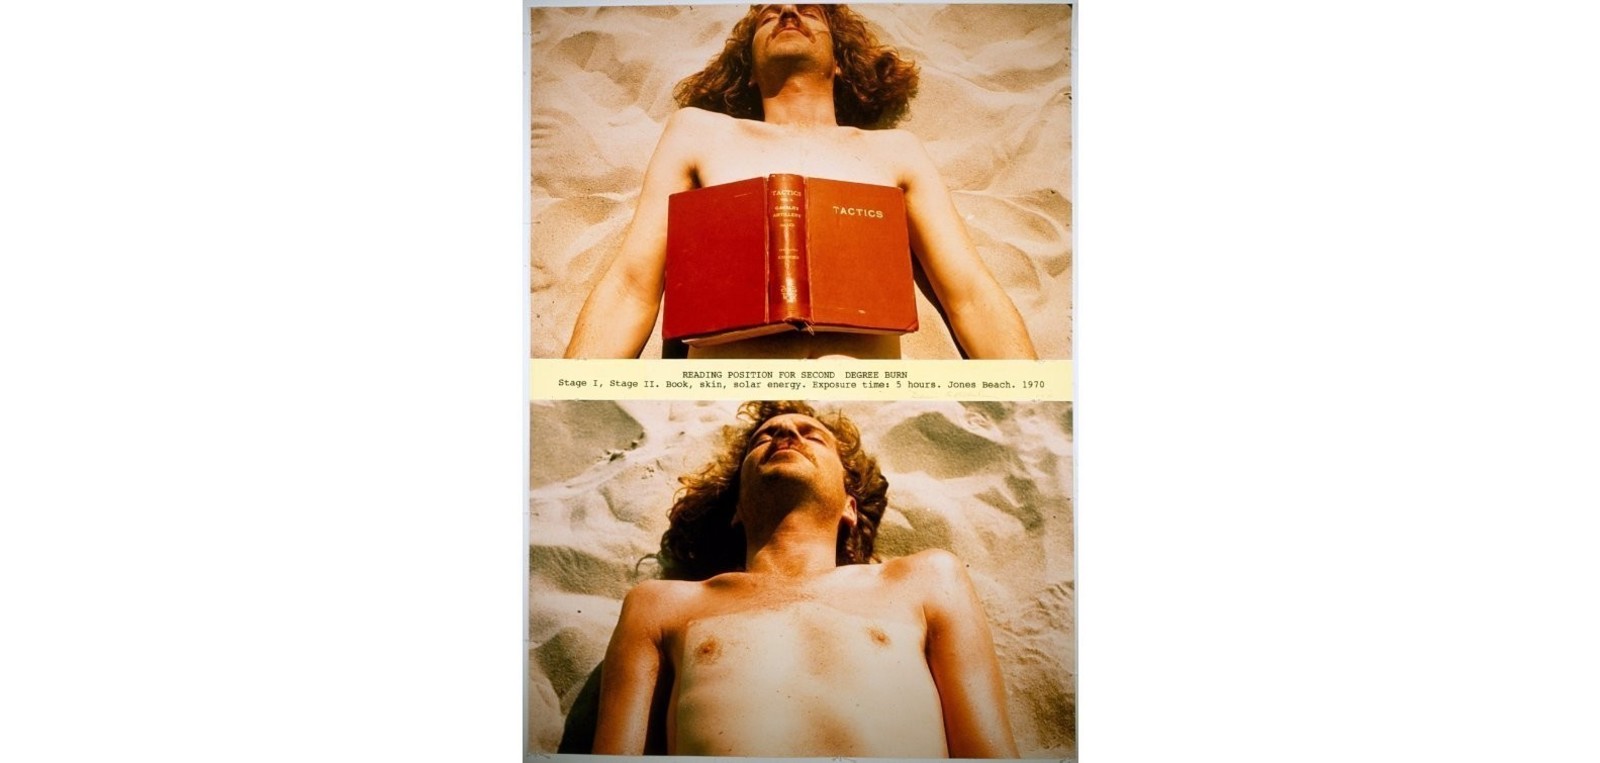 Denis Oppenheim  Reading Position for Second Degree Burn, 1970  Book, skin, solar energy  Exposure time: 5 hours  Jones Beach, New York